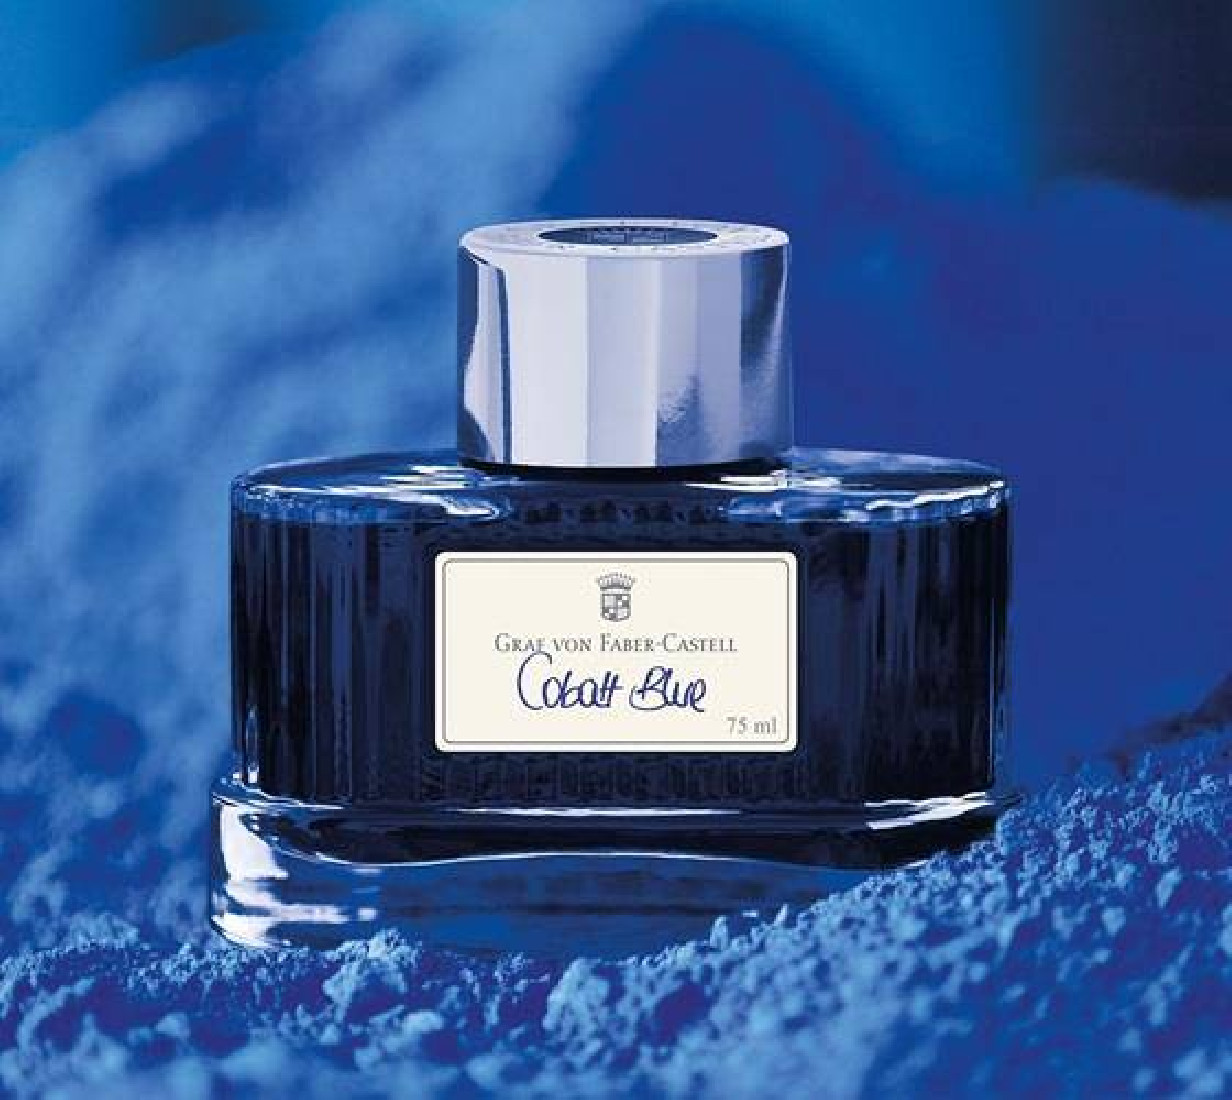 Graf von Faber-Castell Cobalt Blue 141001 Fountain Pen Ink 75ml